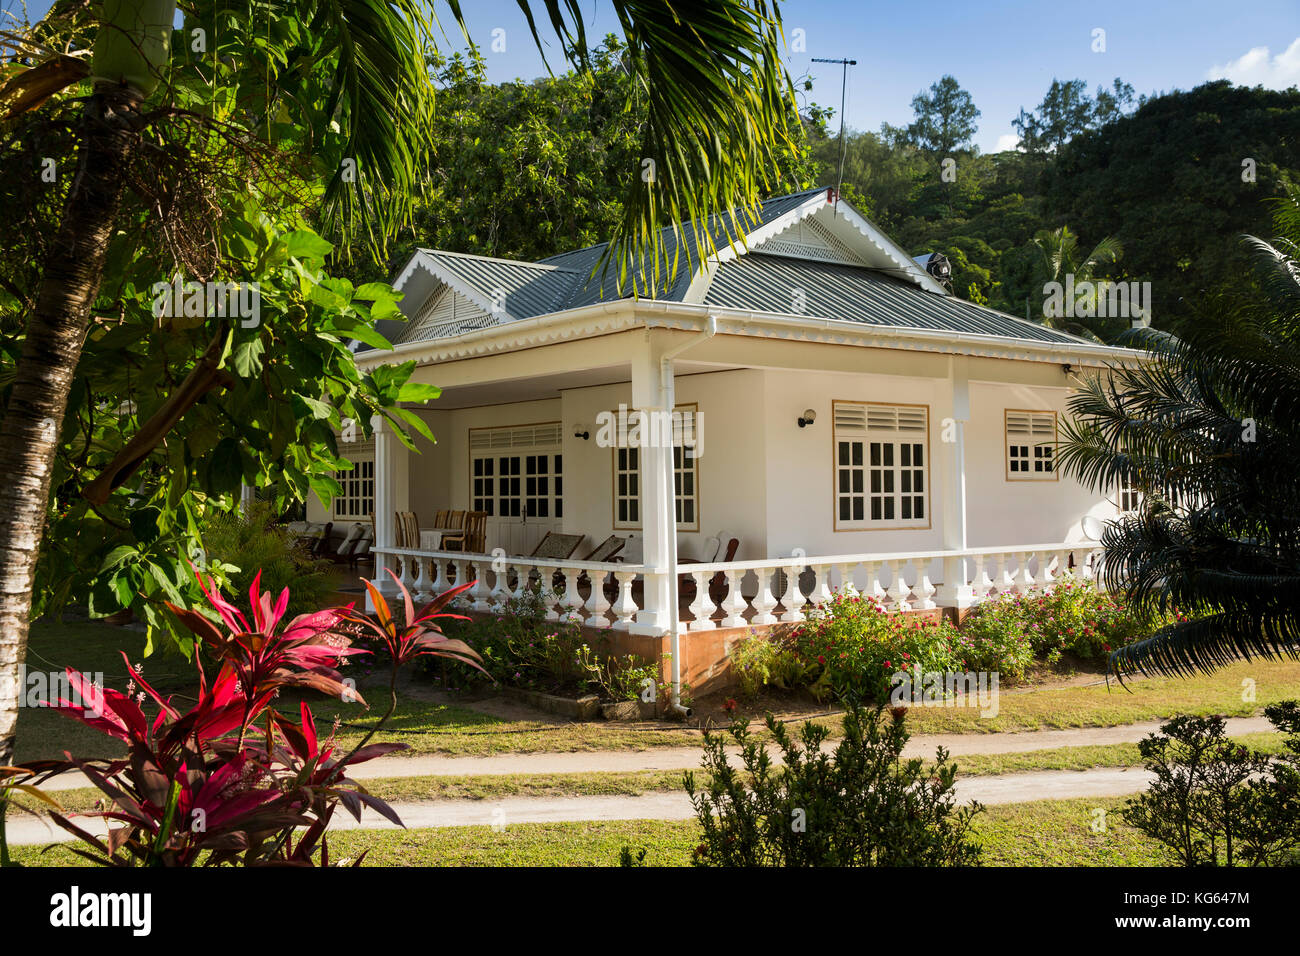 Les Seychelles, Praslin, Grand Anse, ce bungalow de style colonial avec terrasse dans jardin tropical Banque D'Images